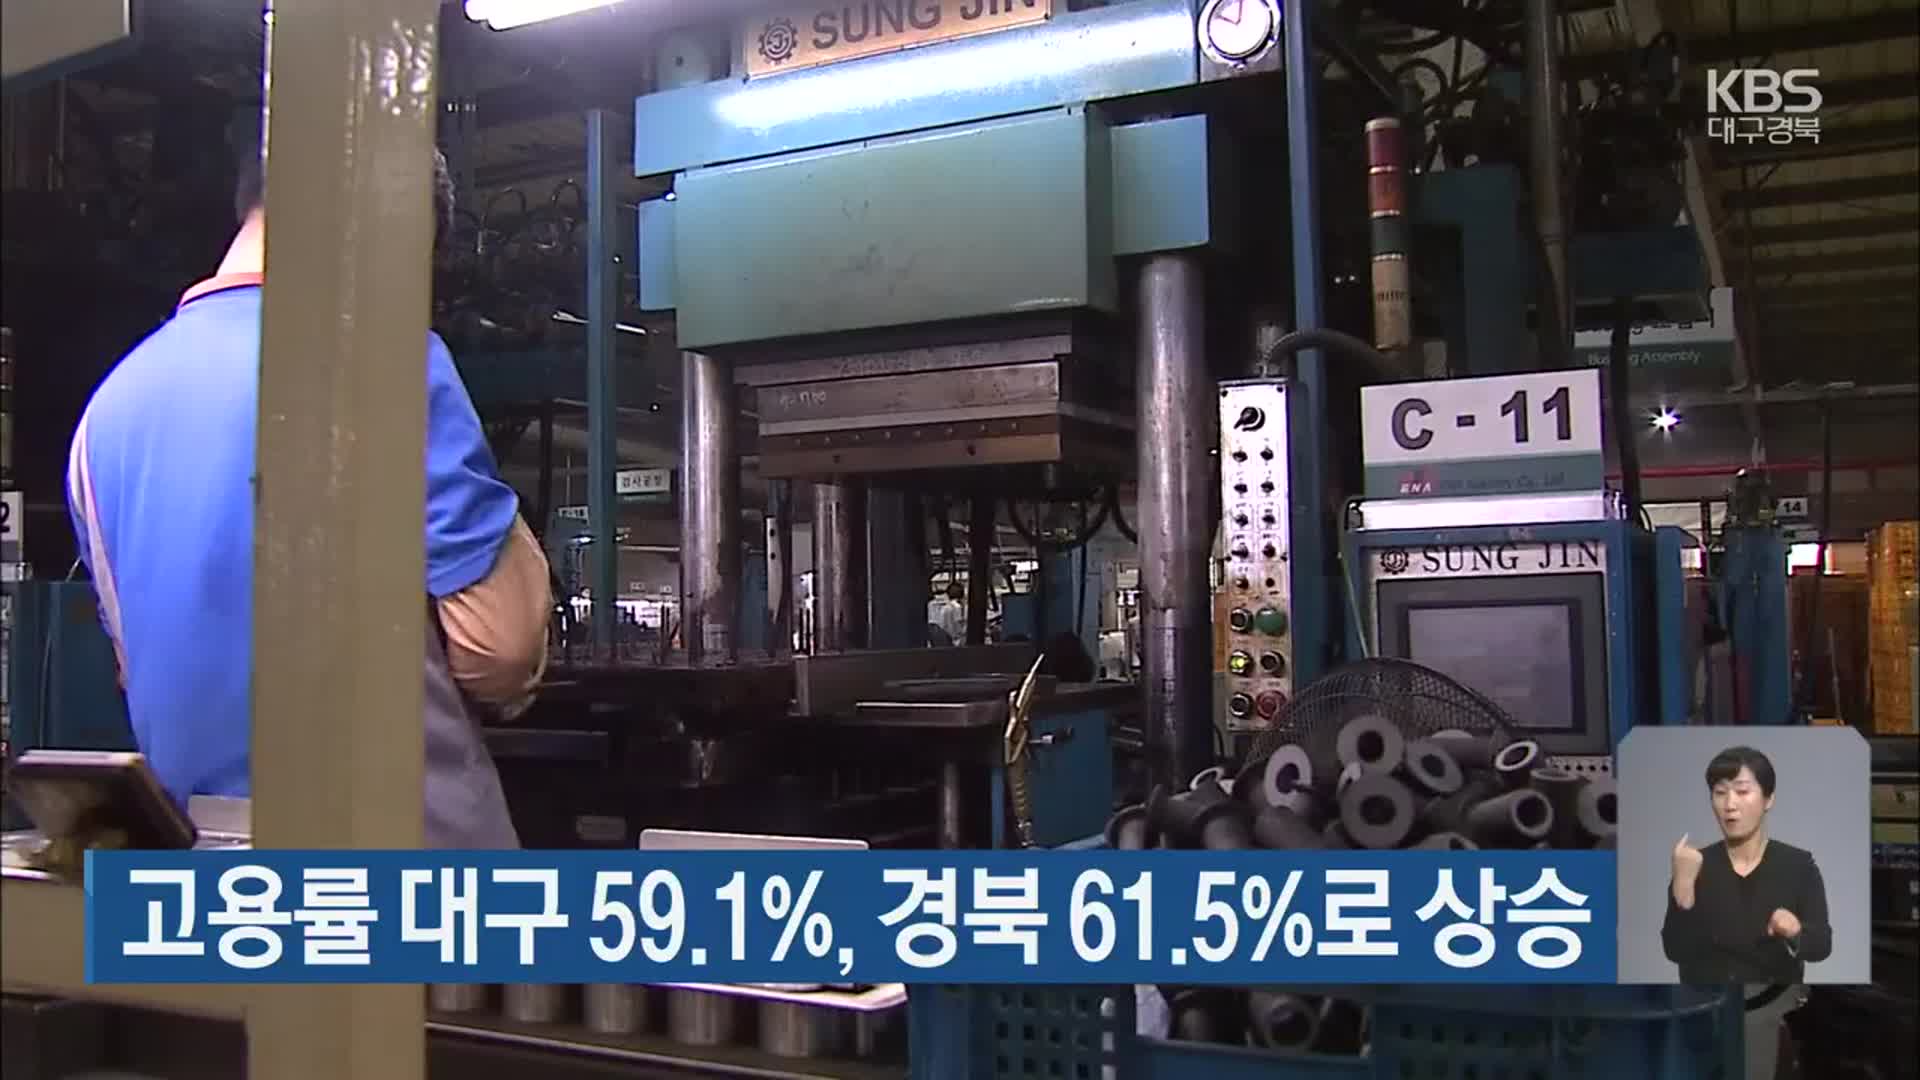 고용률 대구 59.1%, 경북 61.5%로 상승